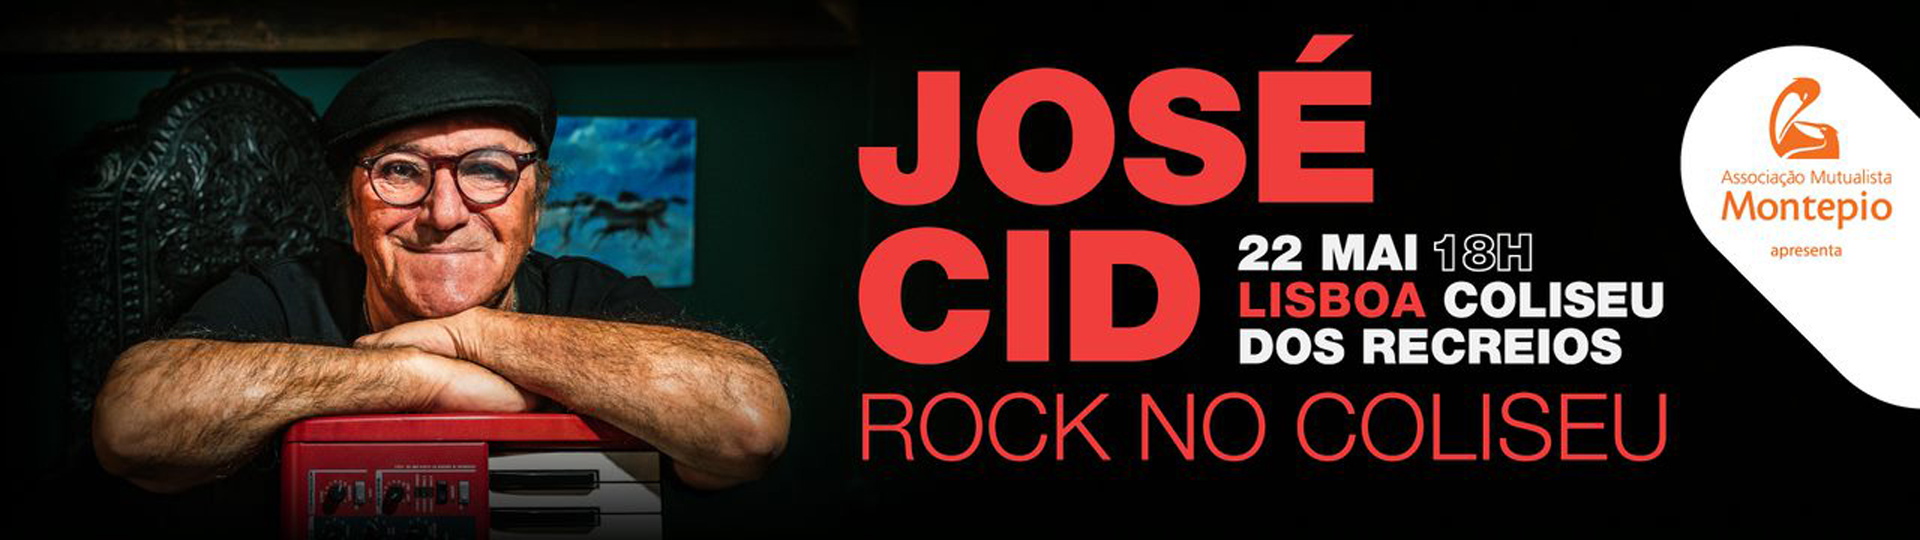 JOSÉ CID | ROCK NO COLISEU